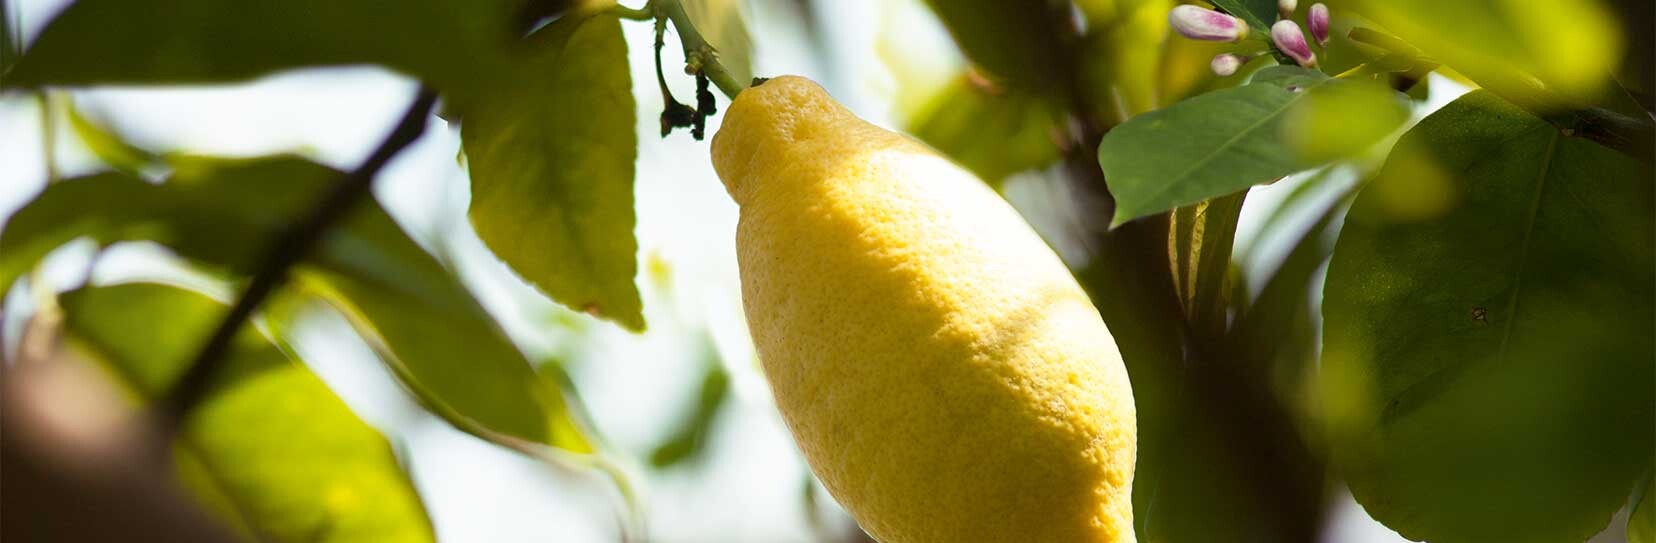 Citron - Citrus limon L.